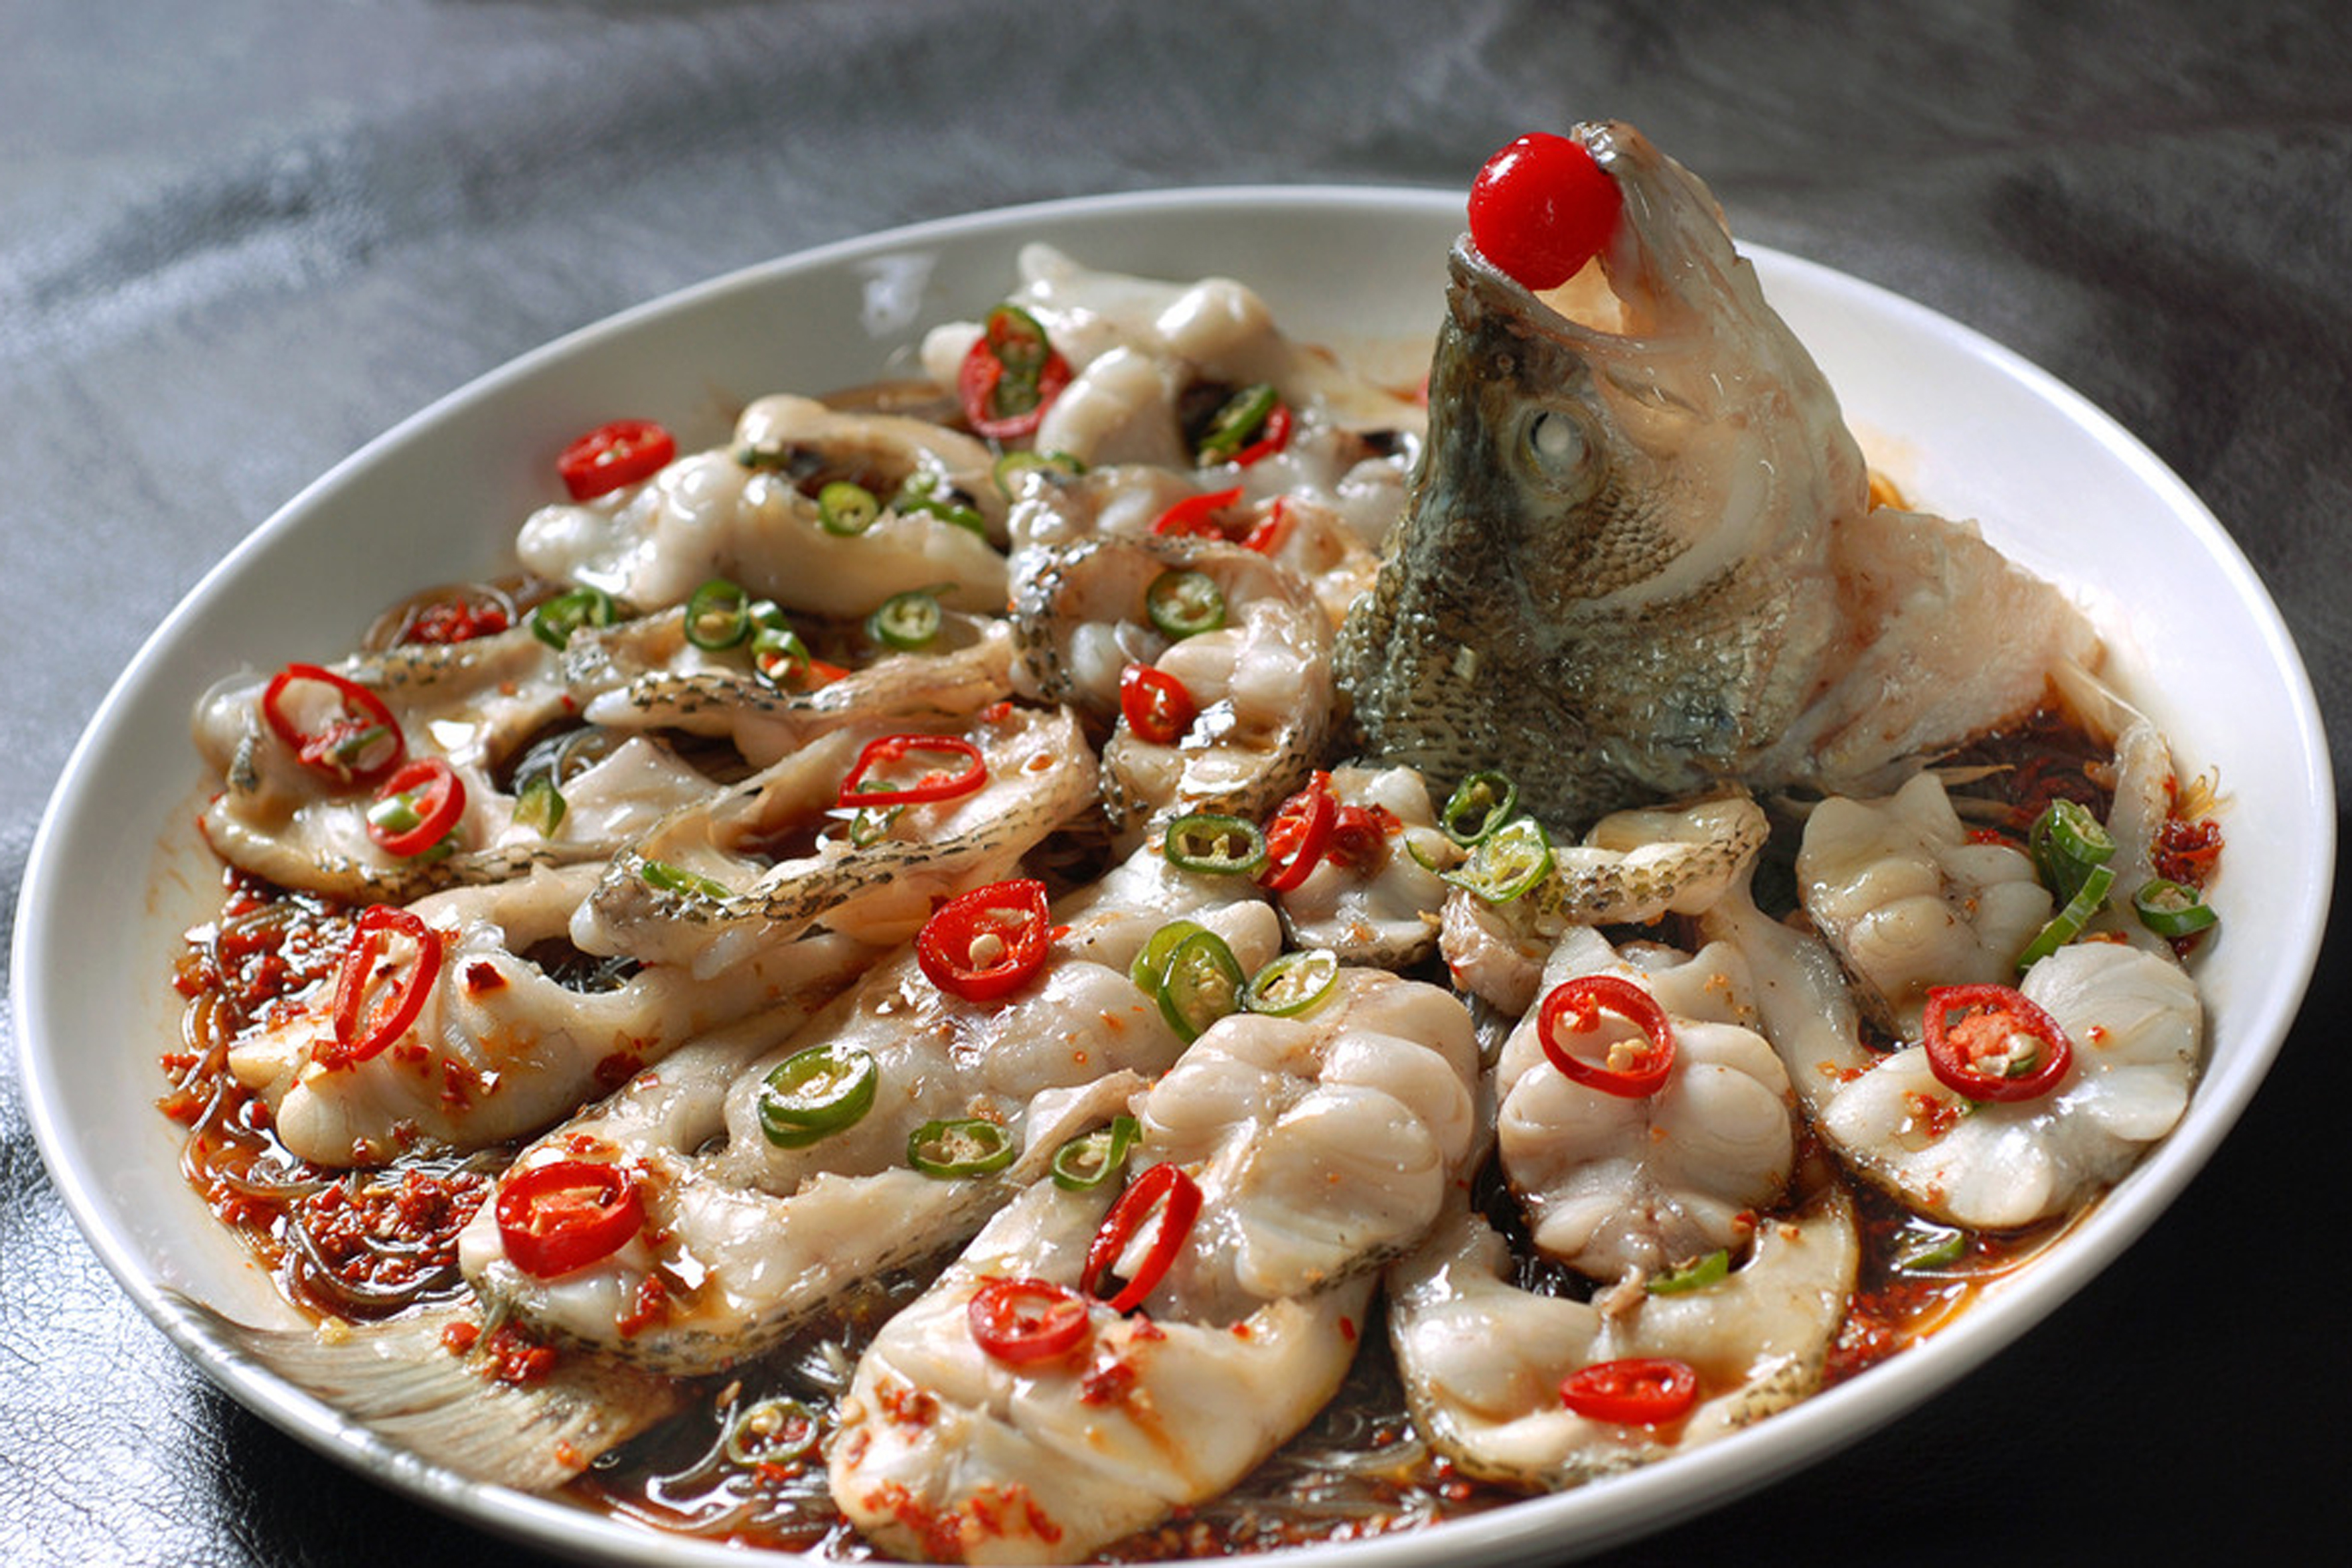 鲜椒鲈鱼:鲜椒鲈鱼是一道由鲈鱼为主要材料,配以青椒,红椒,葱,姜,蒜等